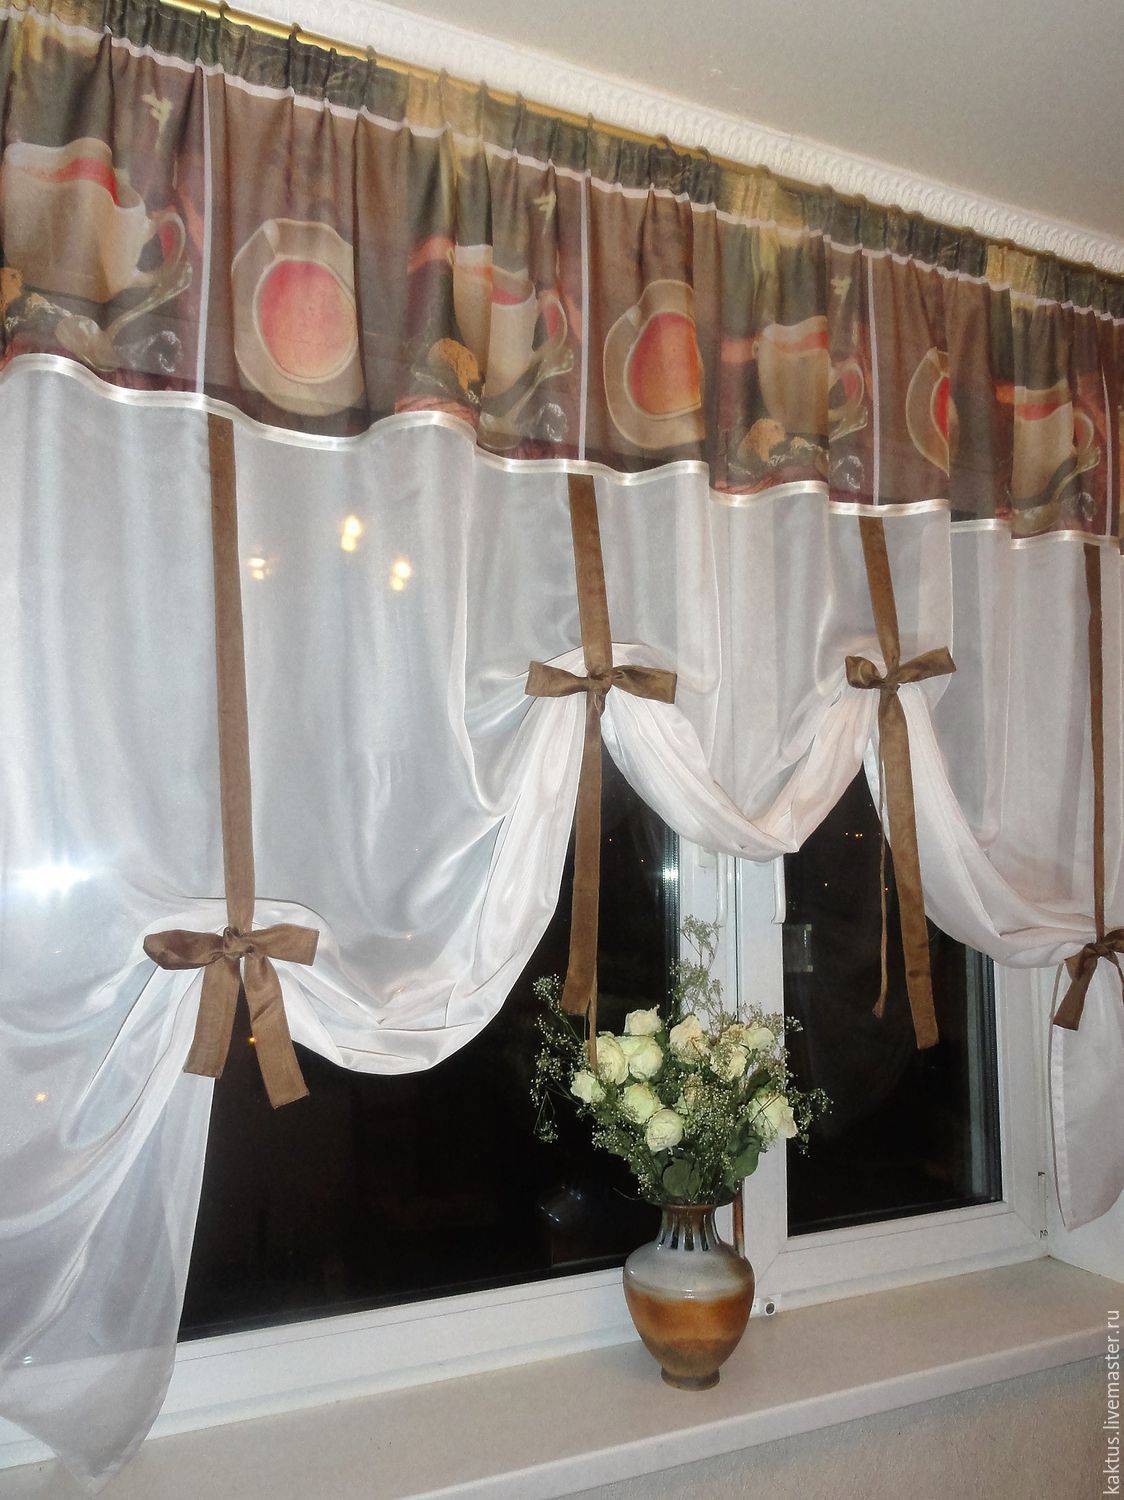 Пошив штор на кухню своими руками: пошаговая инструкция с готовыми выкройками, советы по выбору фасона, ткани, стиля кухонных занавесок